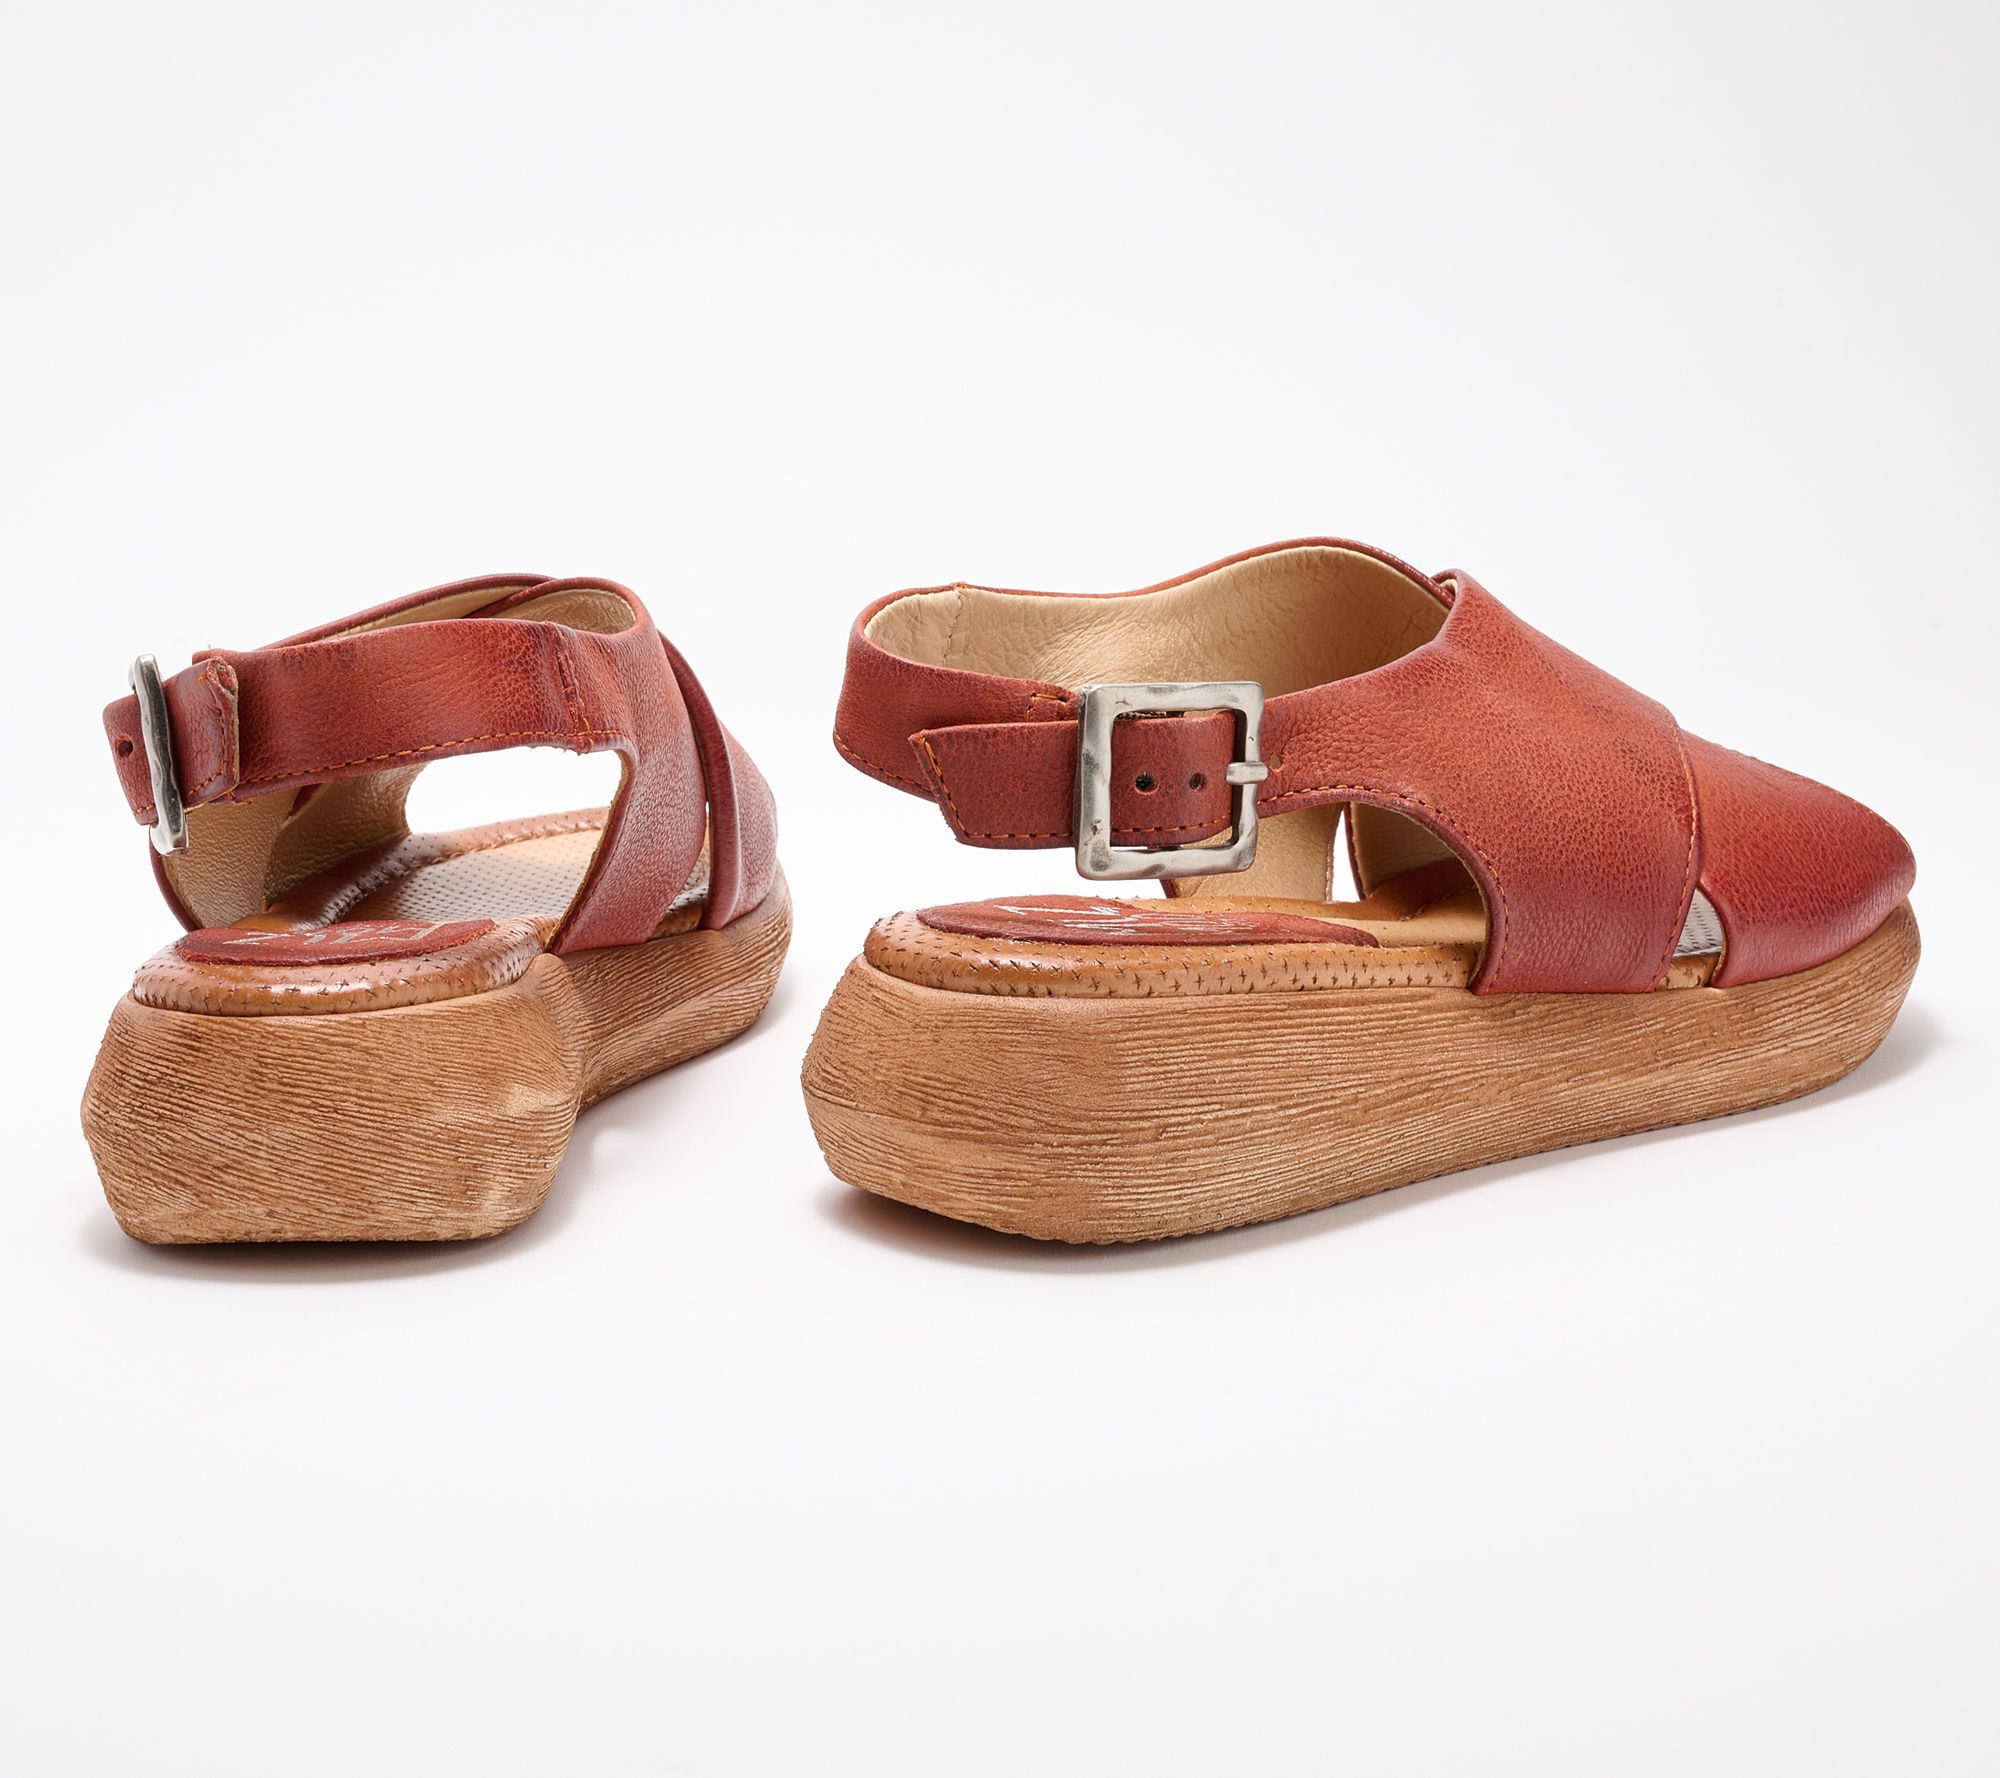 Miz Mooz Leather Sandals Irma - QVC.com